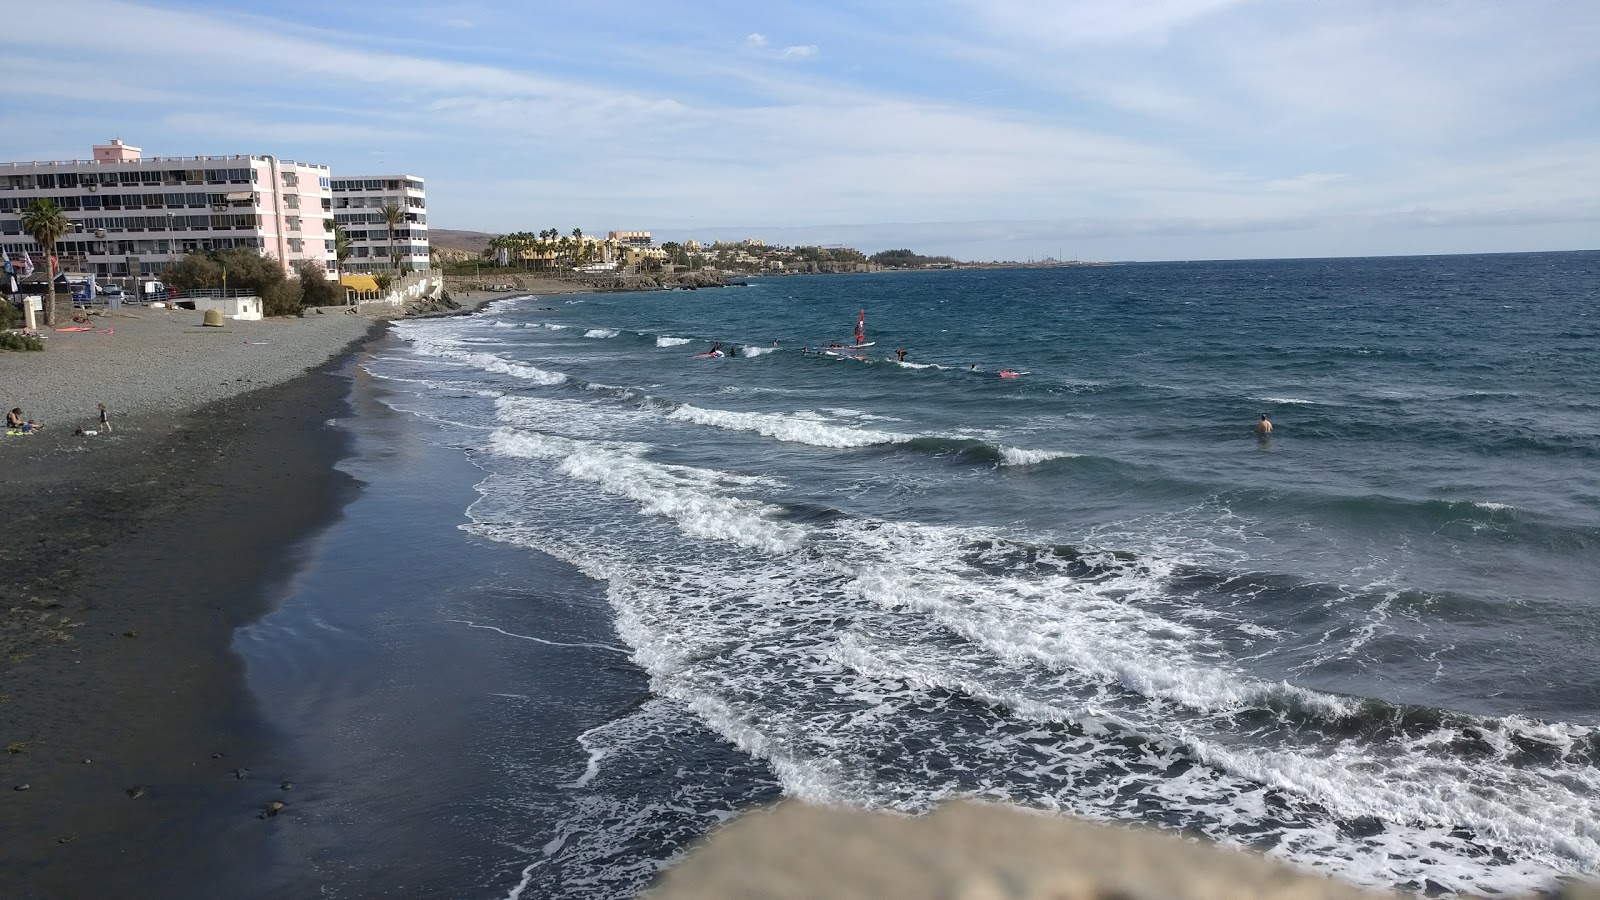 Playa del Aguila'in fotoğrafı geniş plaj ile birlikte